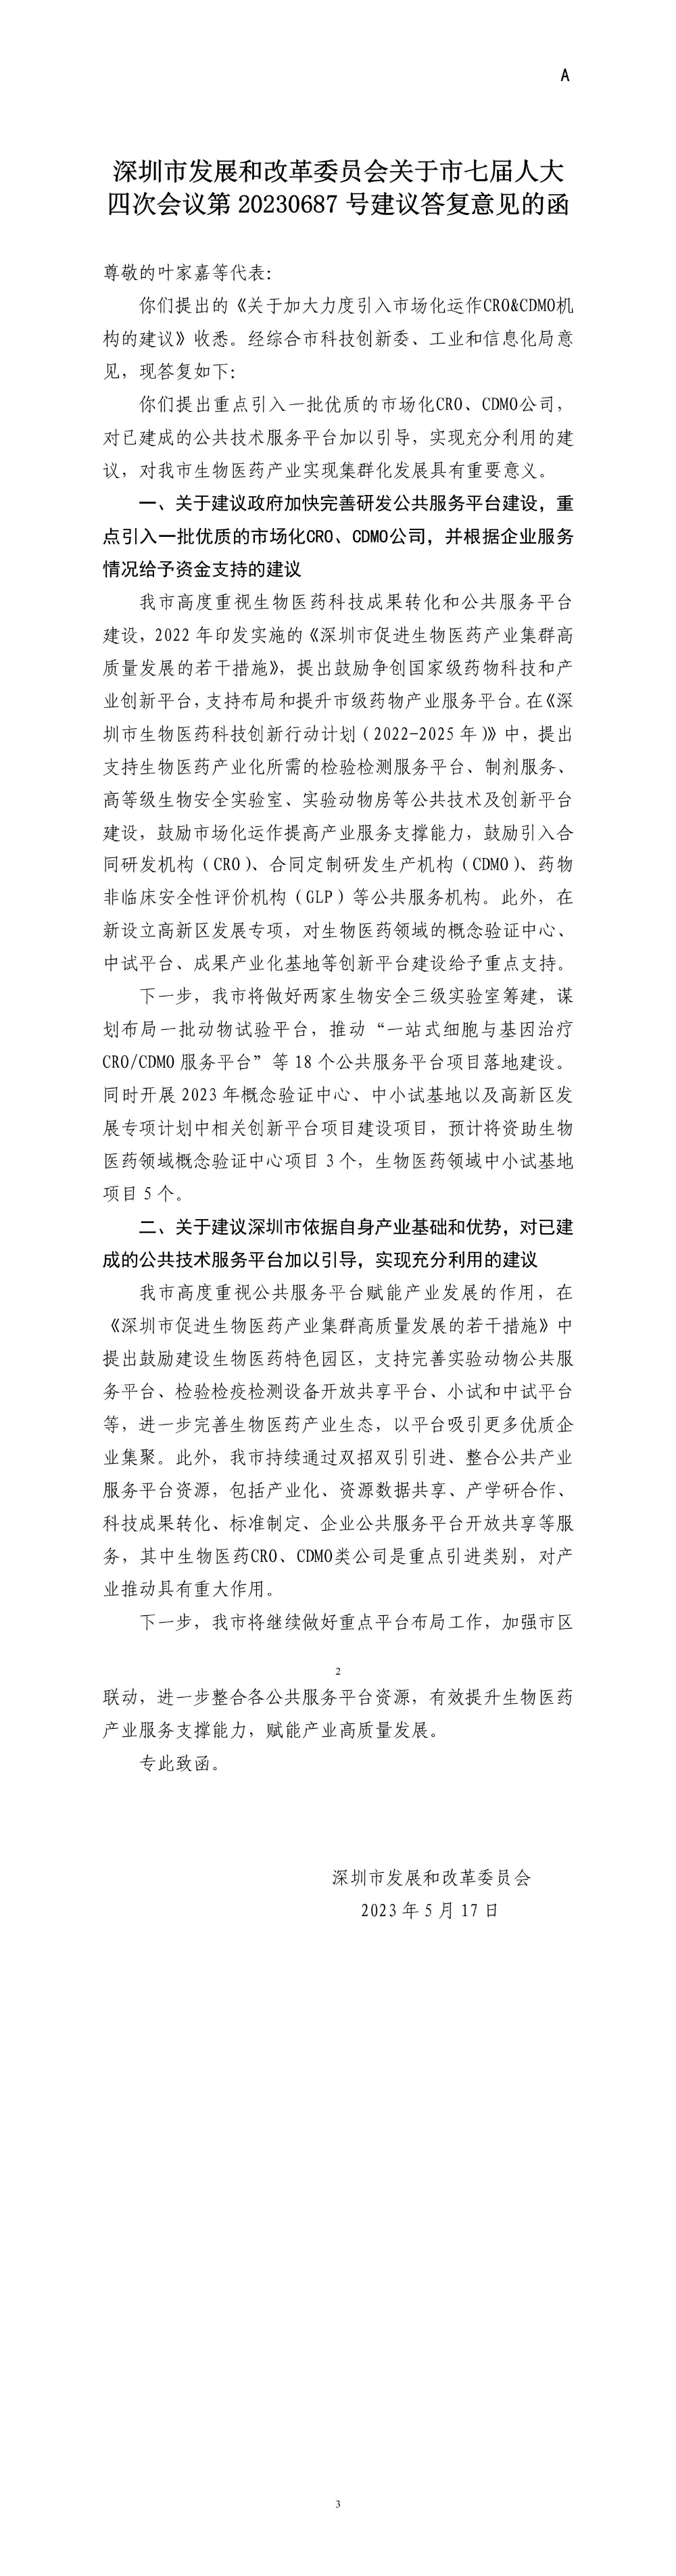 深圳市发展和改革委员会关于市七届人大四次会议第20230687号建议答复意见的函.jpg